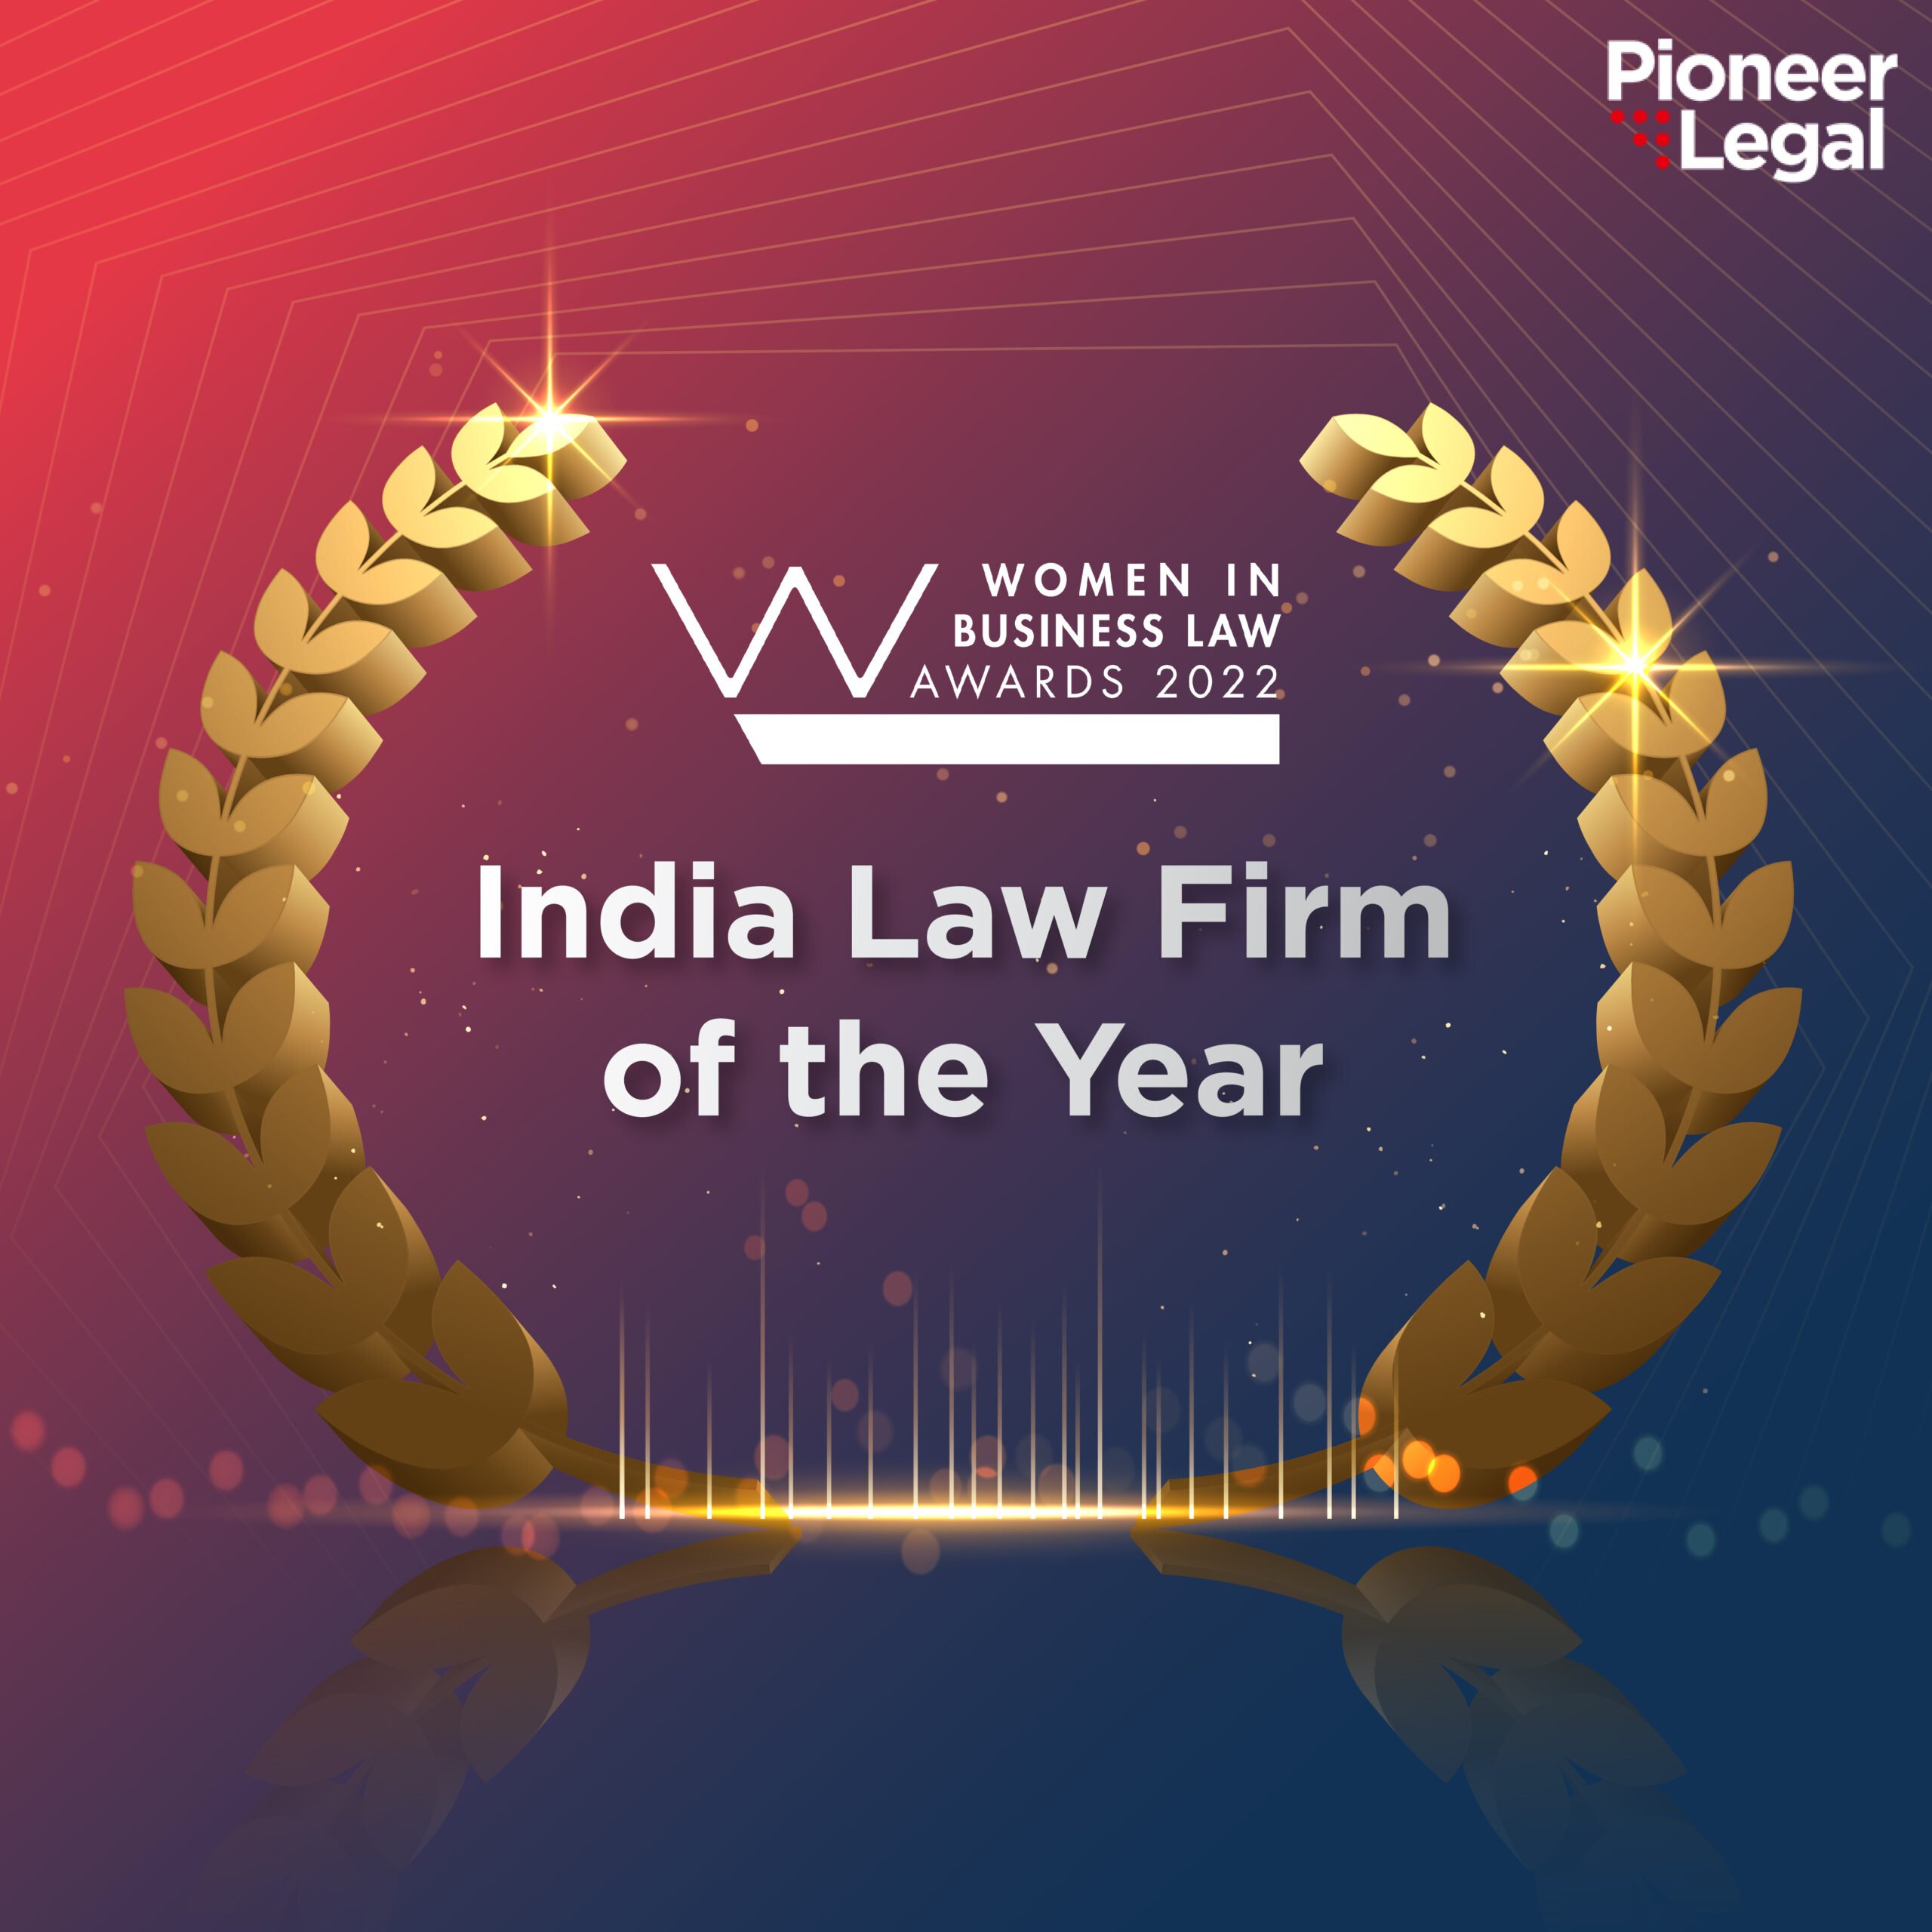 Pioneer Legal - Women in Business Law Award